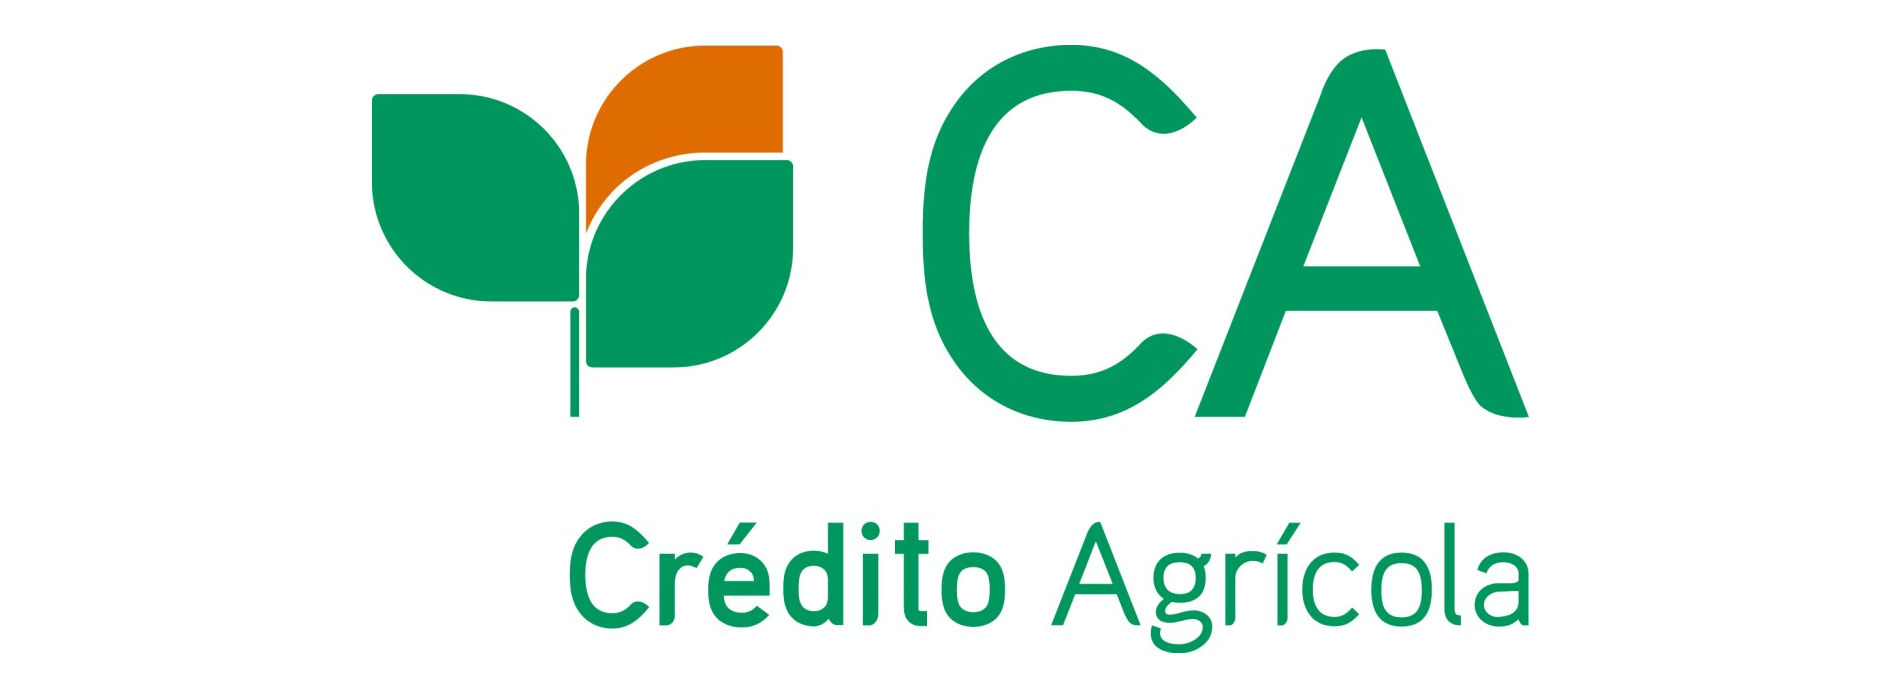 Crédito Agrícola lança campanha de Crédito Pessoal